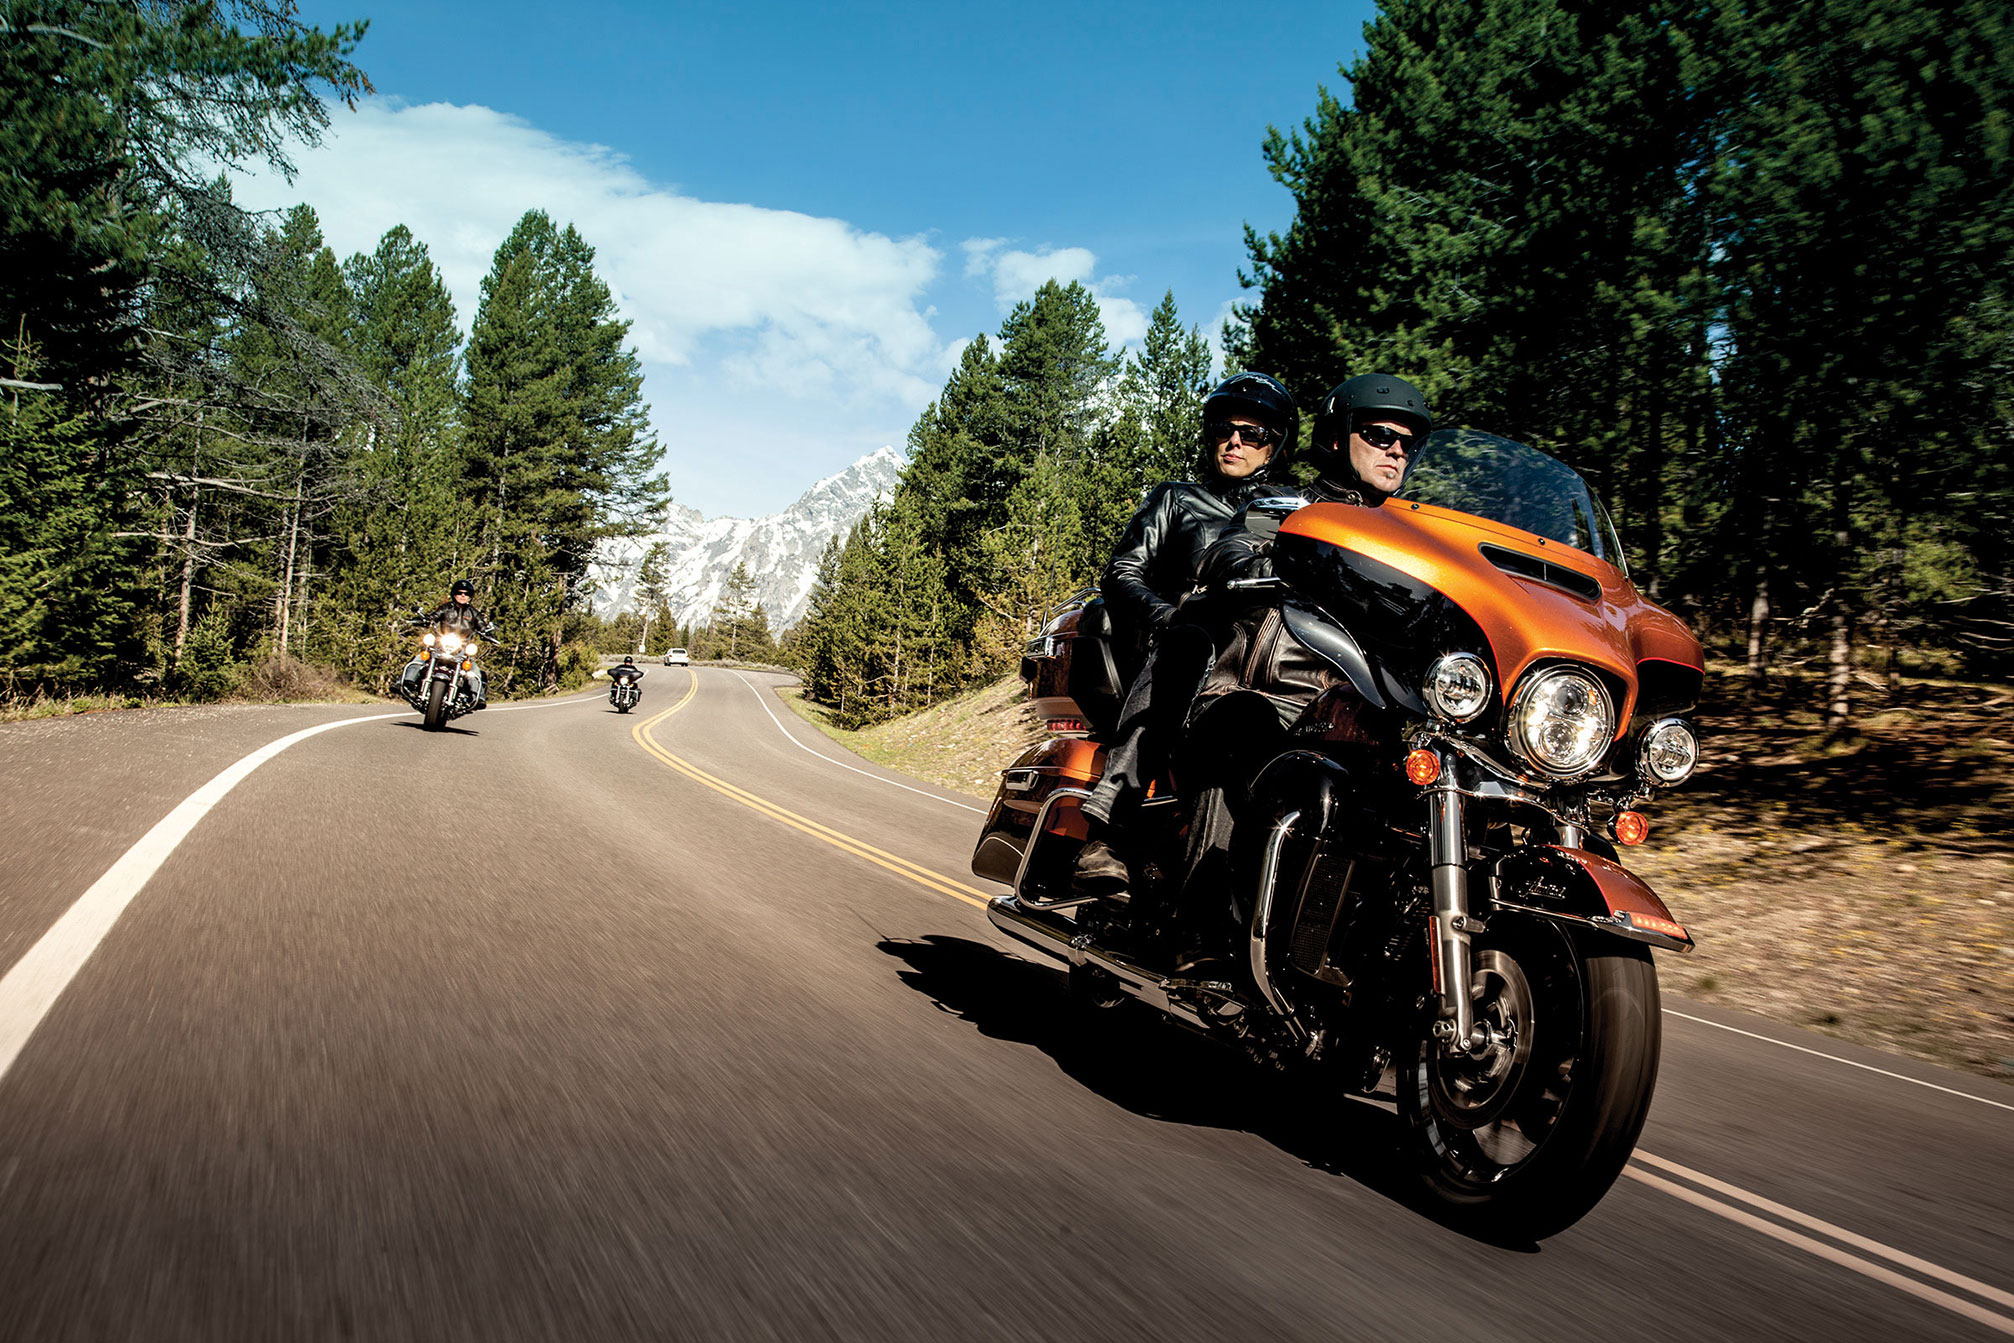 2014 Harley Davidson Flhtk Electra Glide Ultra Limited Review